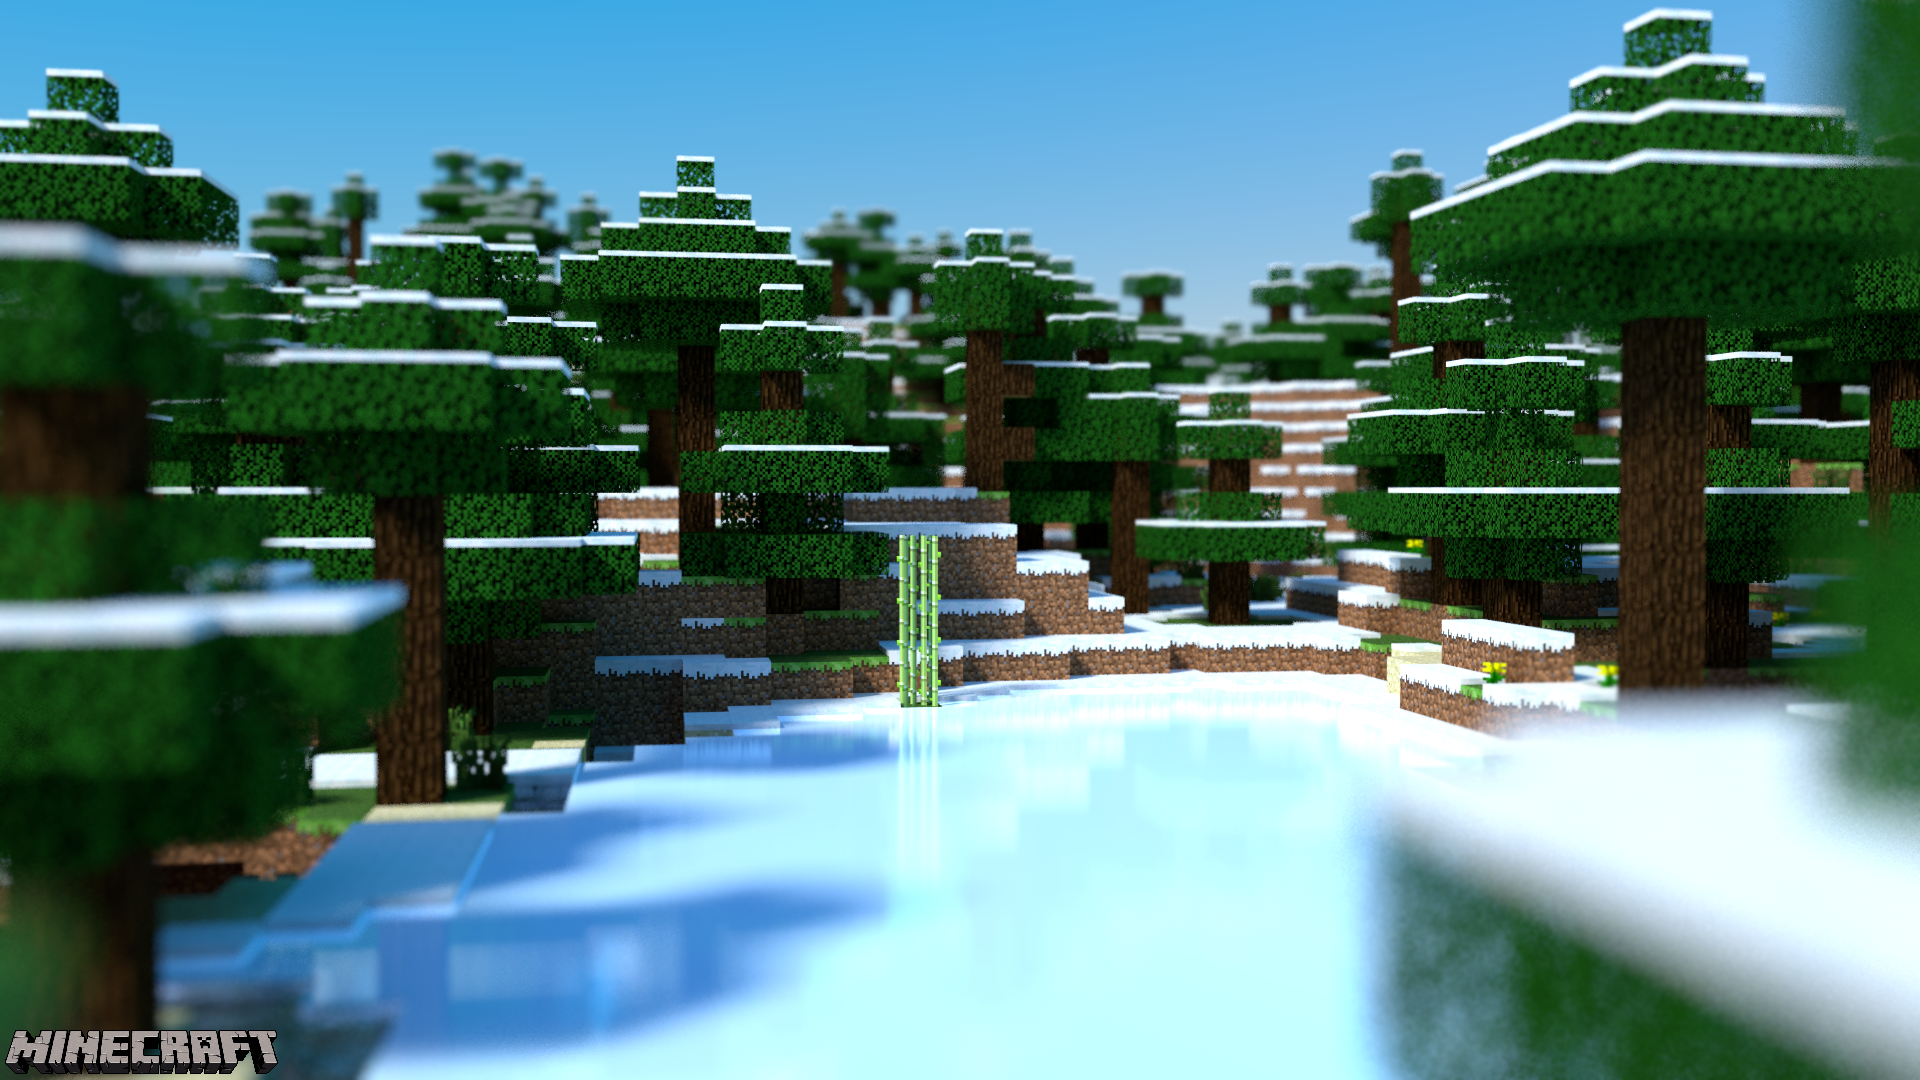 Frozen Minecraft Wallpaper Image